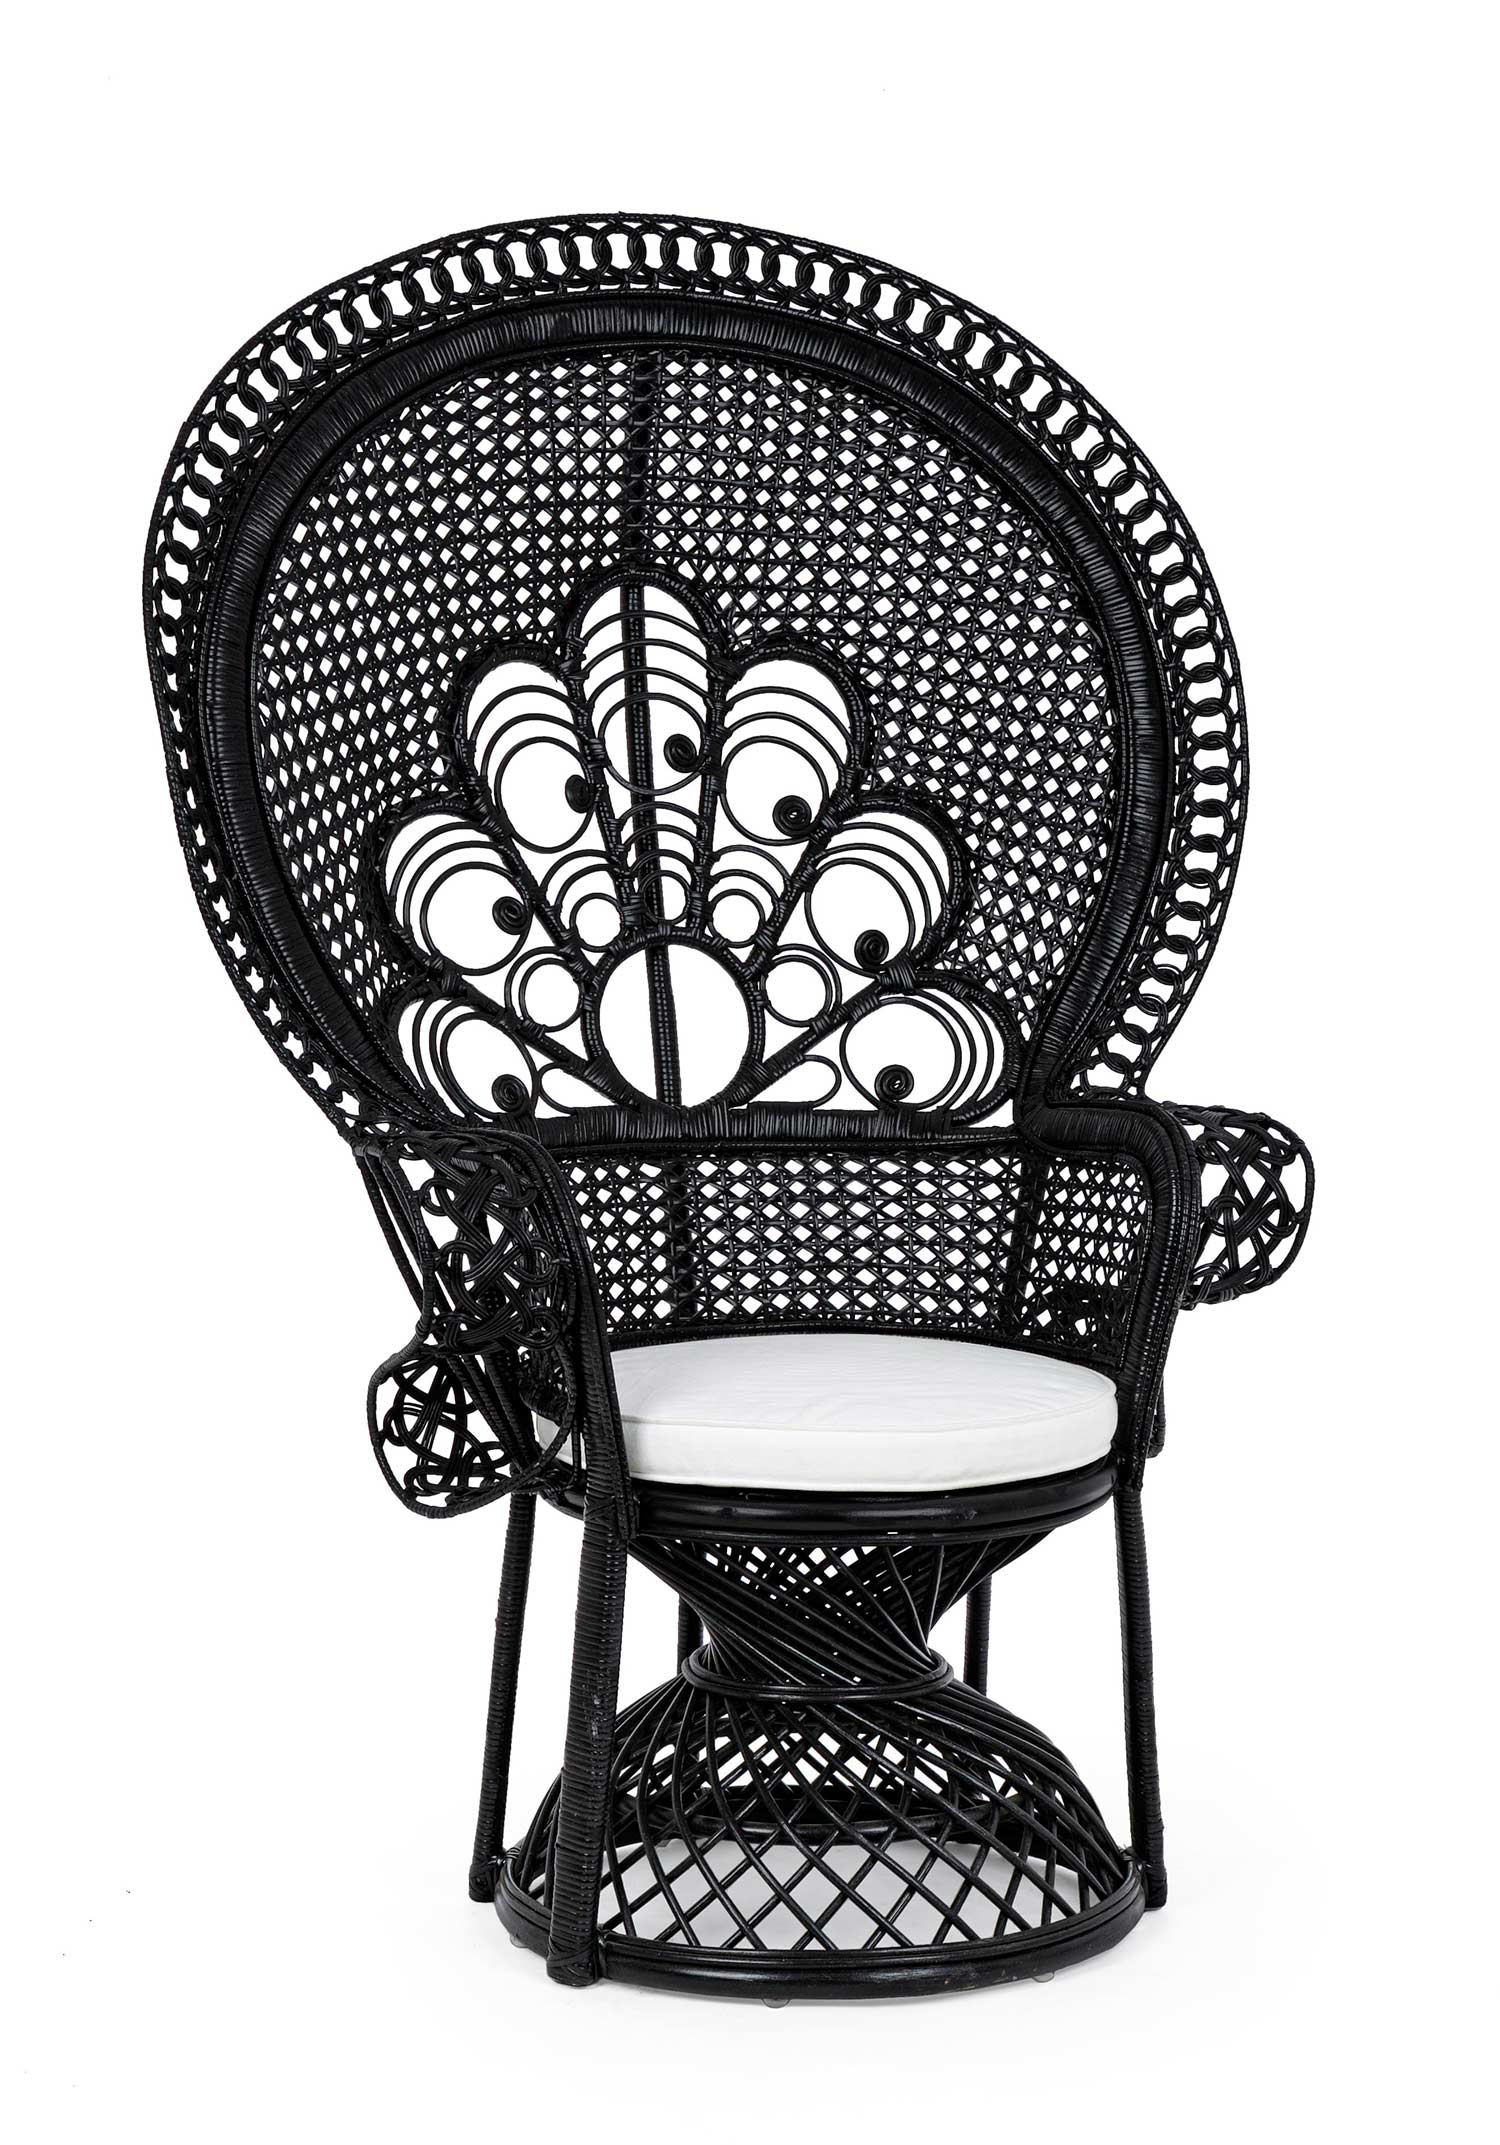 Valódi rattanból készült, fekete színű kézműves páva fotel, ekrü színű ülőpárnával.